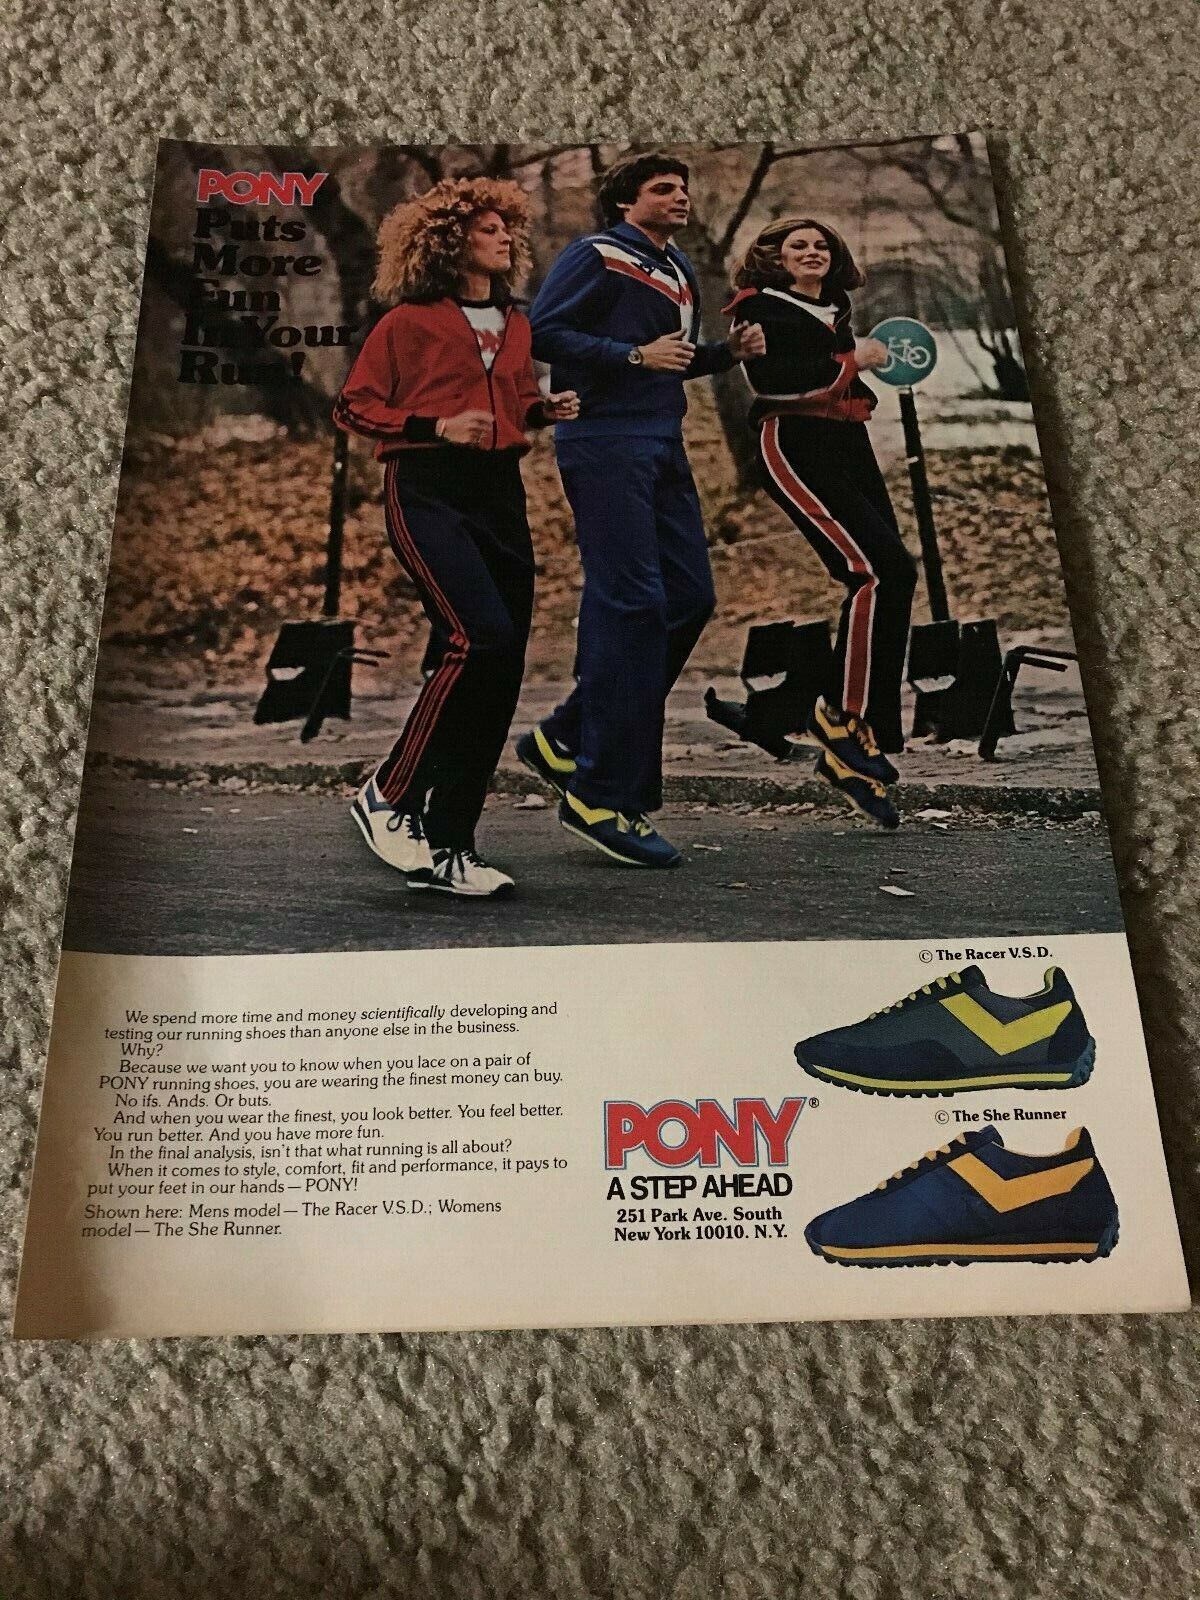 1978 PONY RACER V.S.D. SHE RUNNER Running Shoes Poster Print Ad 1970s RARE